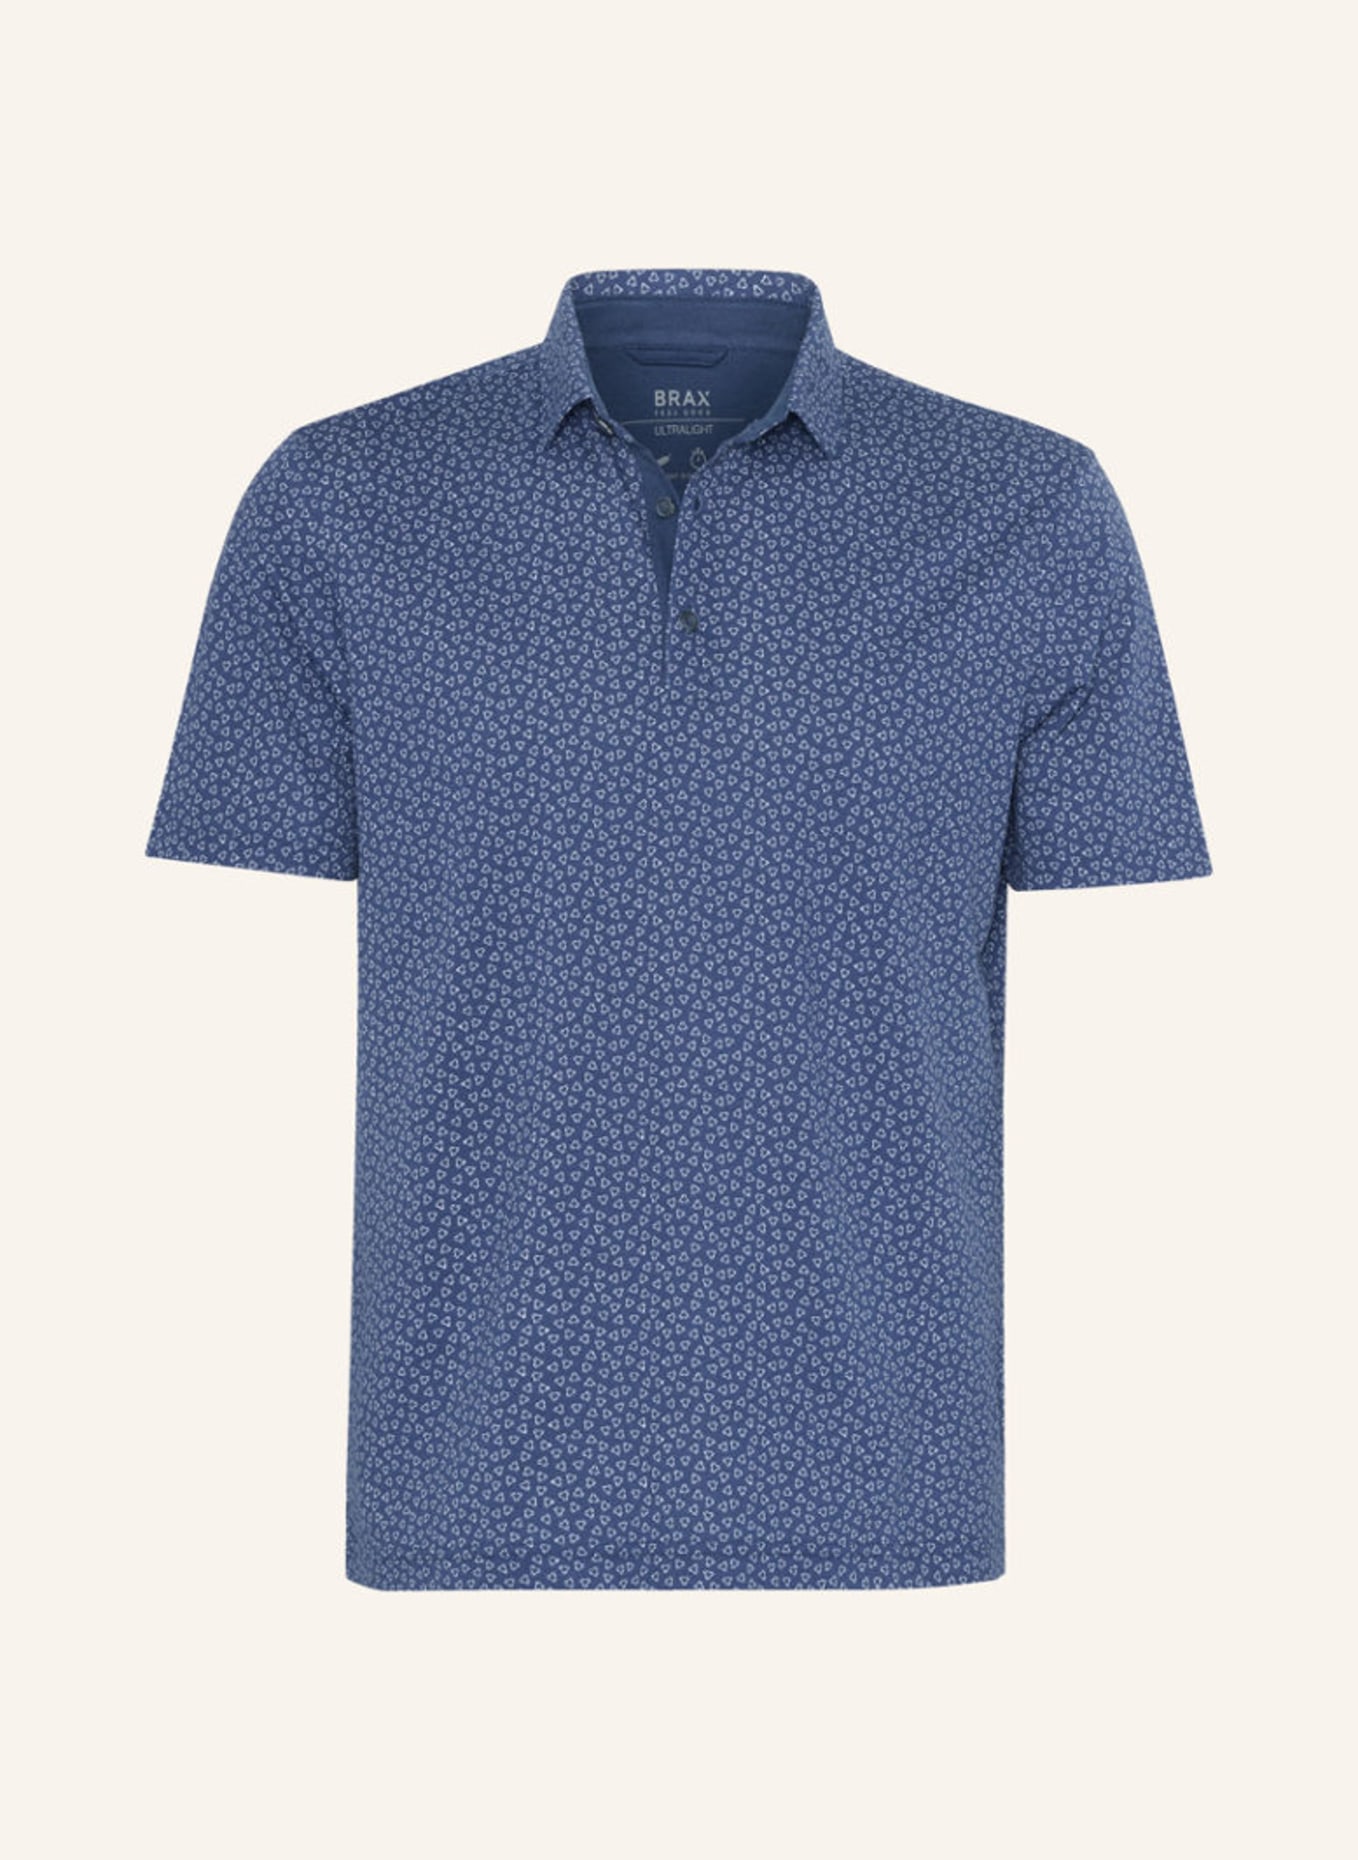 BRAX Piqué-Poloshirt STYLE PICO, Farbe: BLAU (Bild 1)